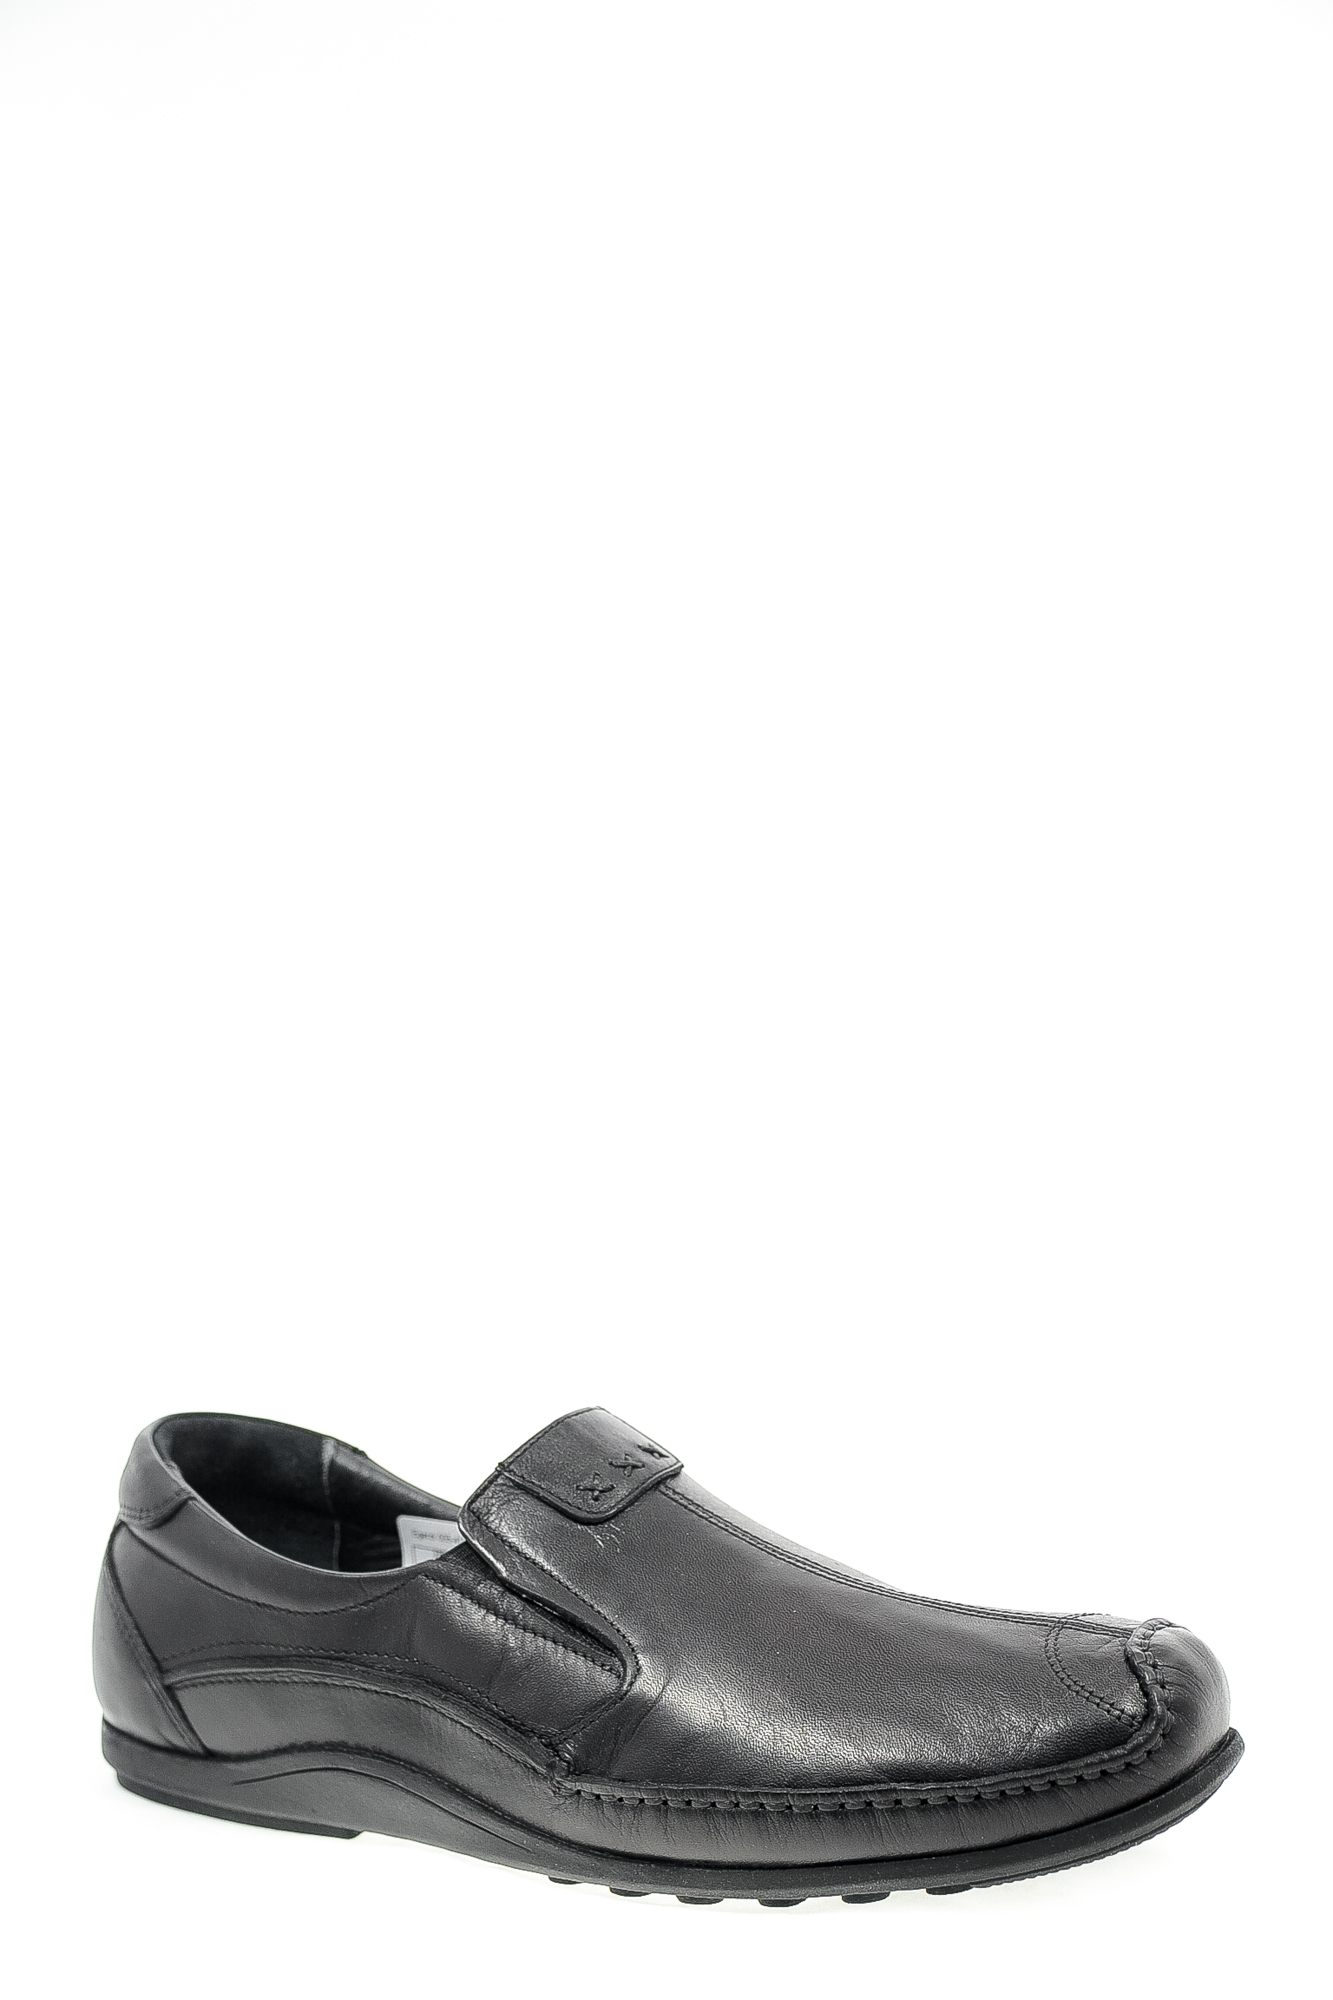 Туфли натуральная кожа Egardi Egardi 005-4170 черн цвет черный.